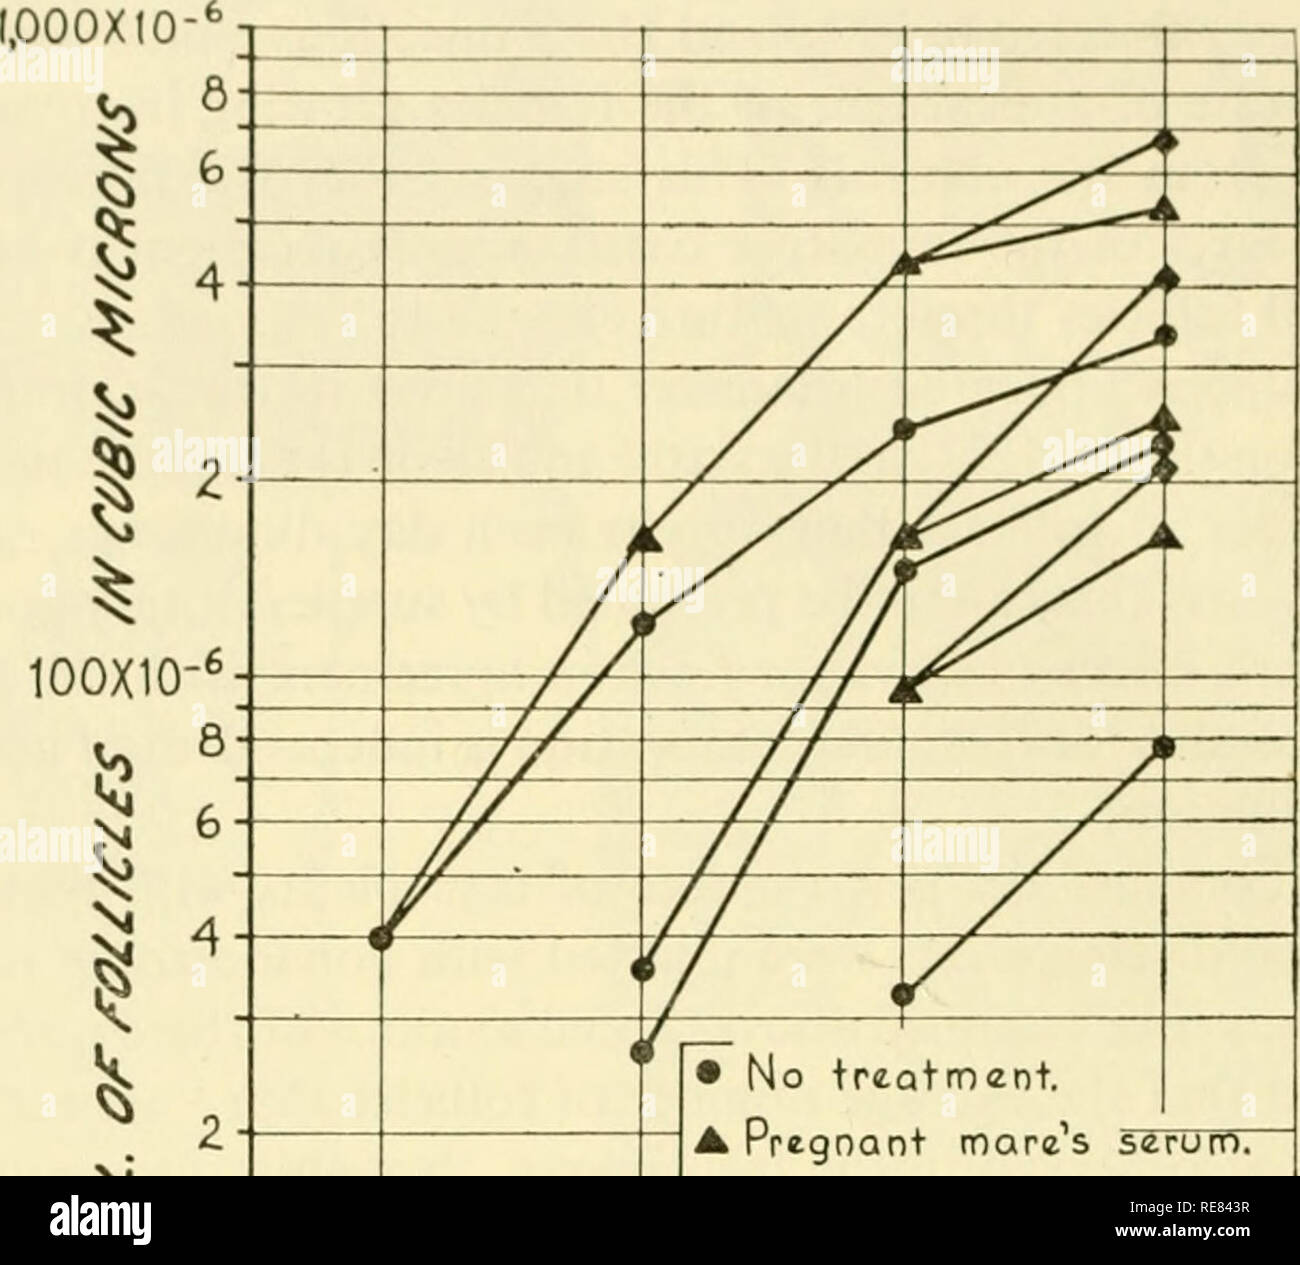 . Kontrolle der Ovulation; Verfahren der Konferenz in Endicott House, Dedham, Massachusetts, 1960 statt. Ovulation - - Verordnung. 28 R. W. NoYES, T. H. Clewe und A. M. Yamate LAUTSTÄRKE ÄNDERUNGEN DER reifenden Follikel der Durchmesser eines bestimmten Follikel, die in der Vorderkammer des Auges mit einem Okular Mikrometer gemessen, war genau sein zu innerhalb von ± 0,25 mm geschätzt. Tlic Volumen von 157 Follikel in 36 Transplantationen wurden täglich vom vierten bis zum siebten postoperativen Tage aufgezeichnet. In 24 der Transplantationen, sowohl PMS und HCG waren an den Empfänger Tier gegeben; im 6. Ich 10 X 10 Stockfoto